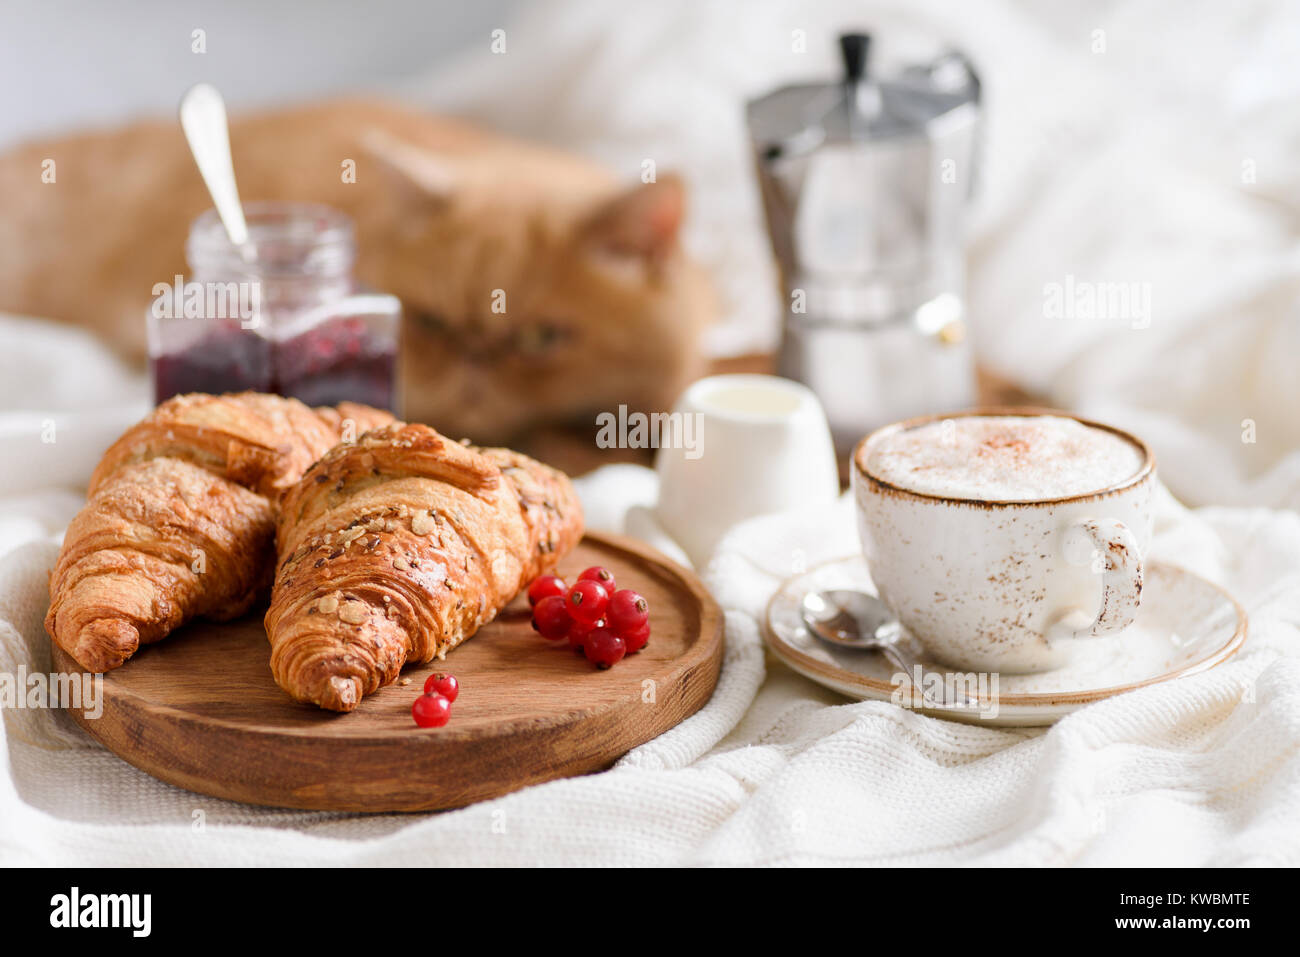 La prima colazione a letto con cornetti, caffè e marmellata. Vista orizzontale. Lo zenzero cat recante sullo sfondo Foto Stock